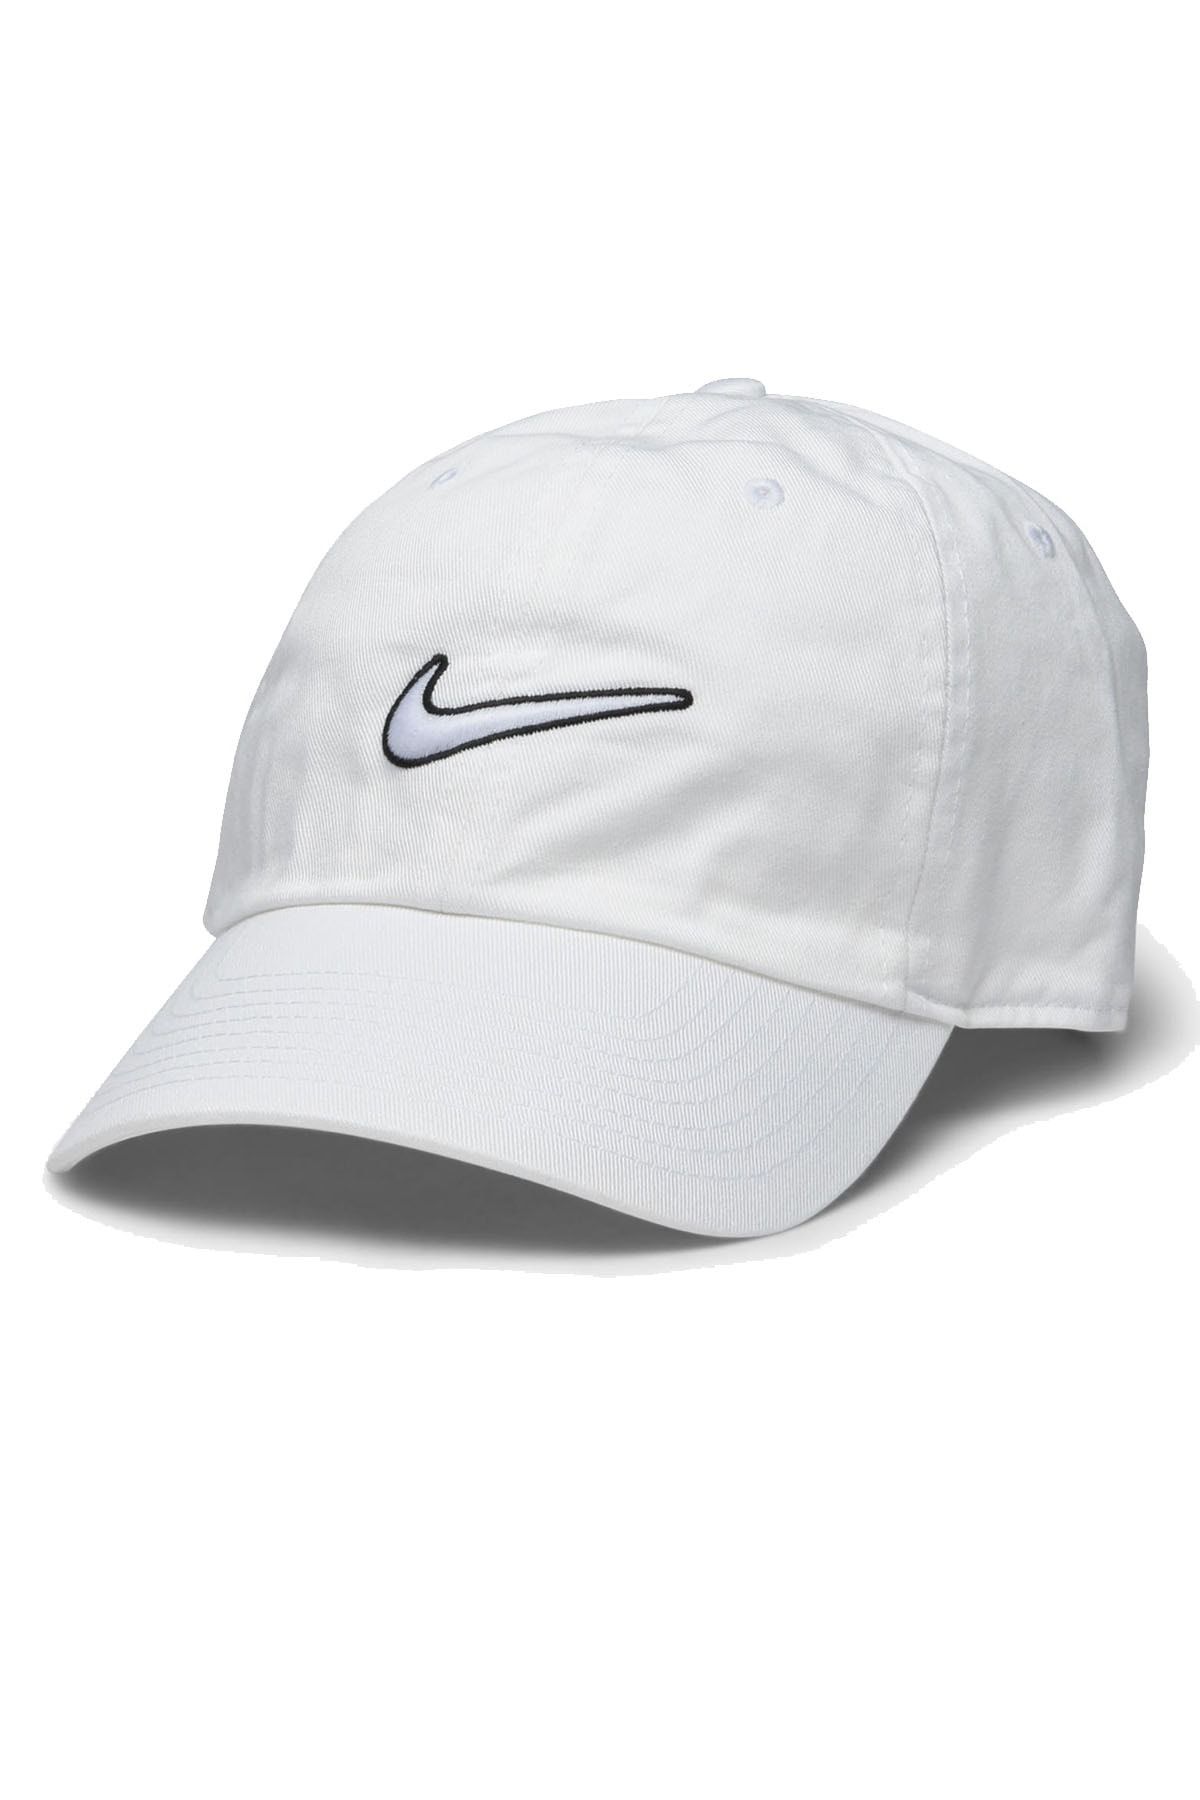 Nike H86 Cap Essential Swsh Şapka 943091-100